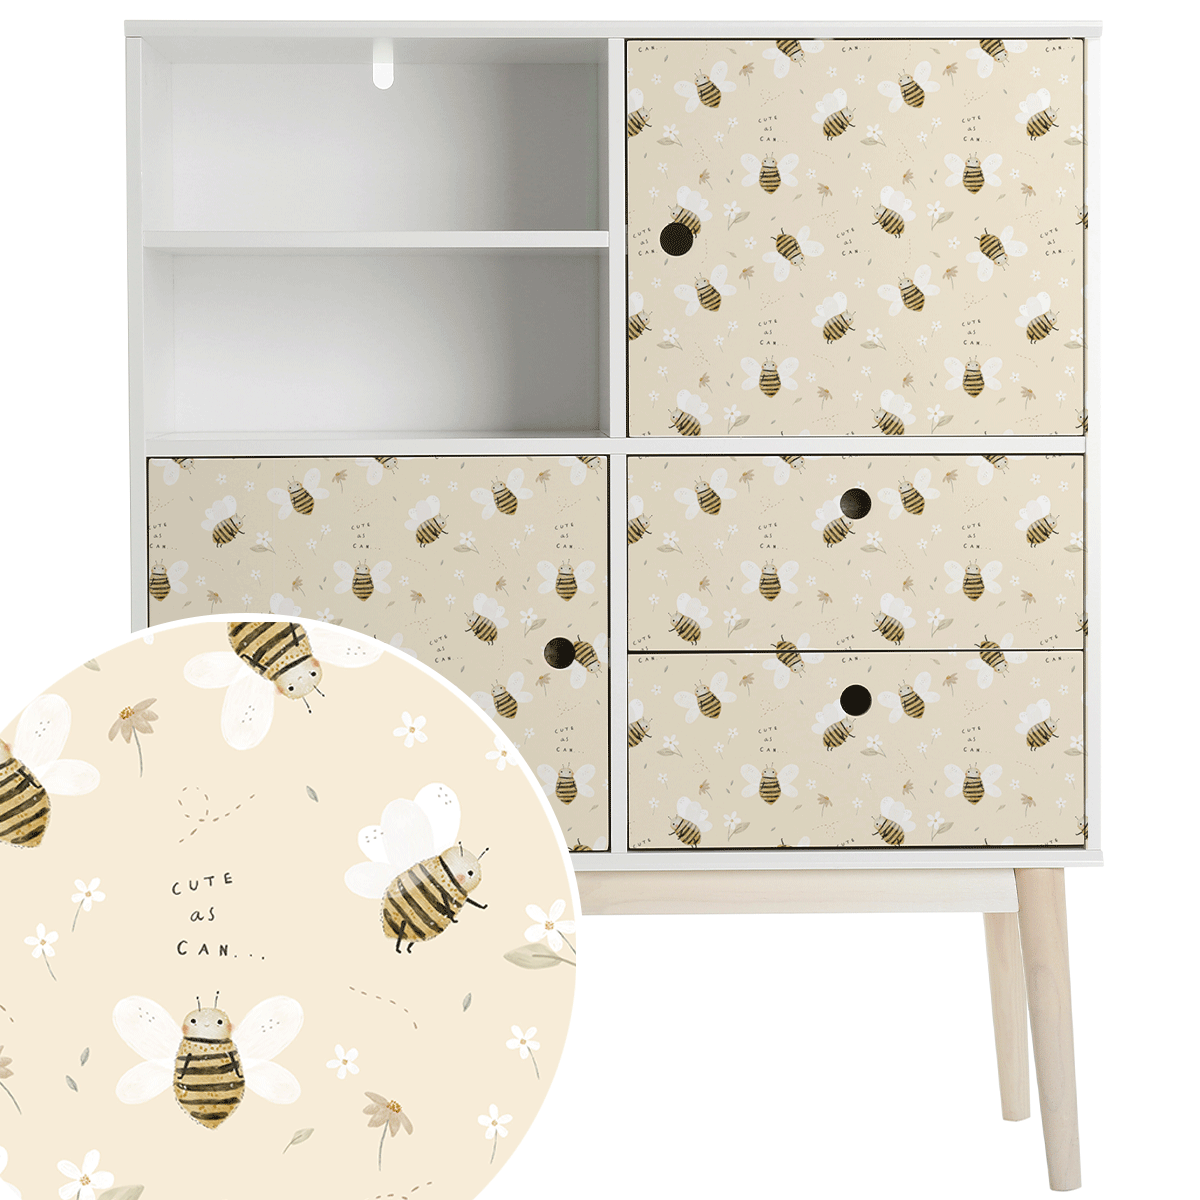 Furniture wrap - Honey bees (cream)